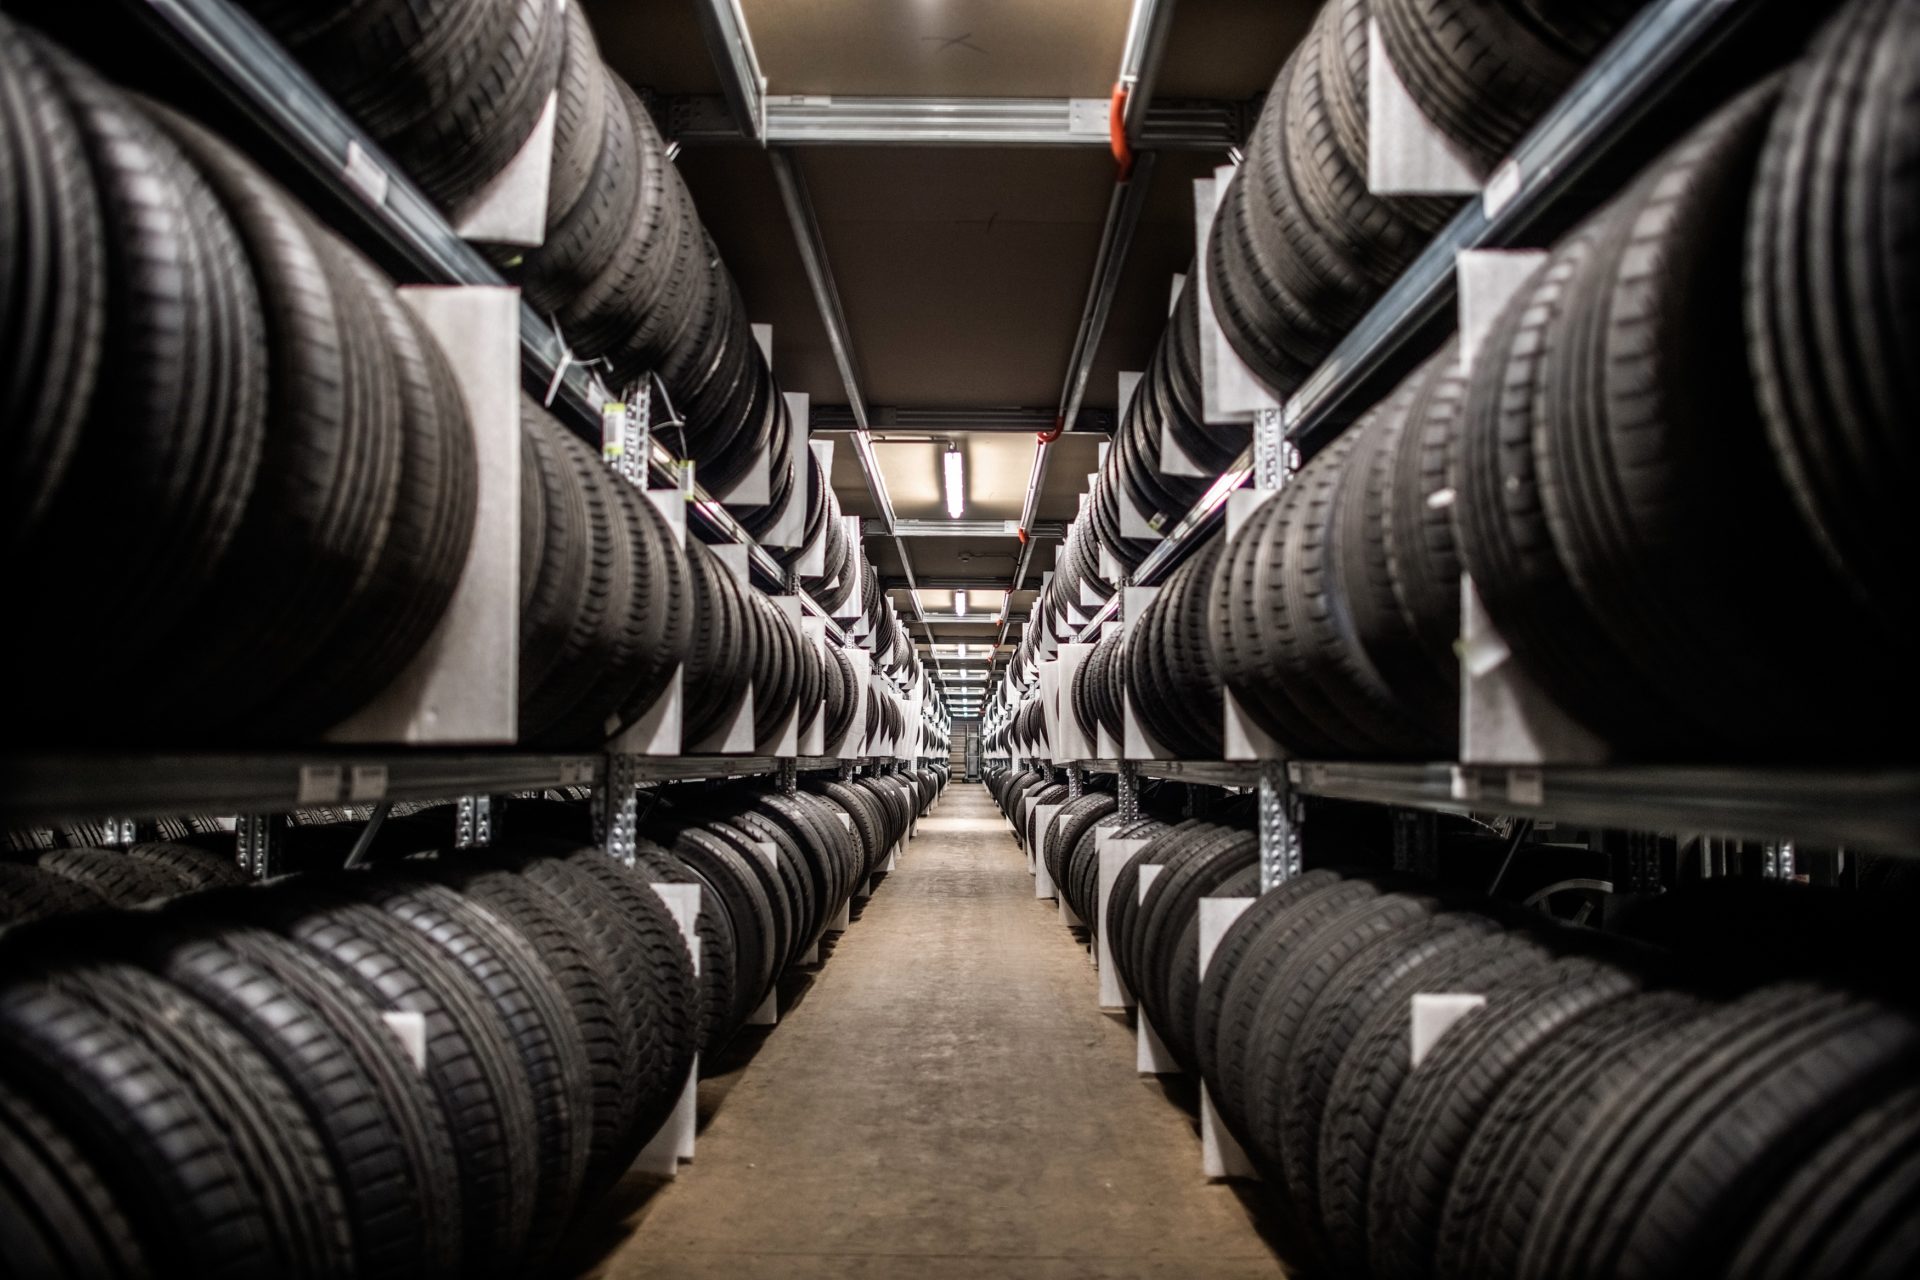 Tausende von Reifen ruhen in den Regalen des Reifen-Hotels. Ordentlich abgelegt, systematisch erfasst und in Sekunden wieder zu finden, wenn sie zurück zum Kunden sollen. Fotograf Andreas Endermann war von der Optik fasziniert.